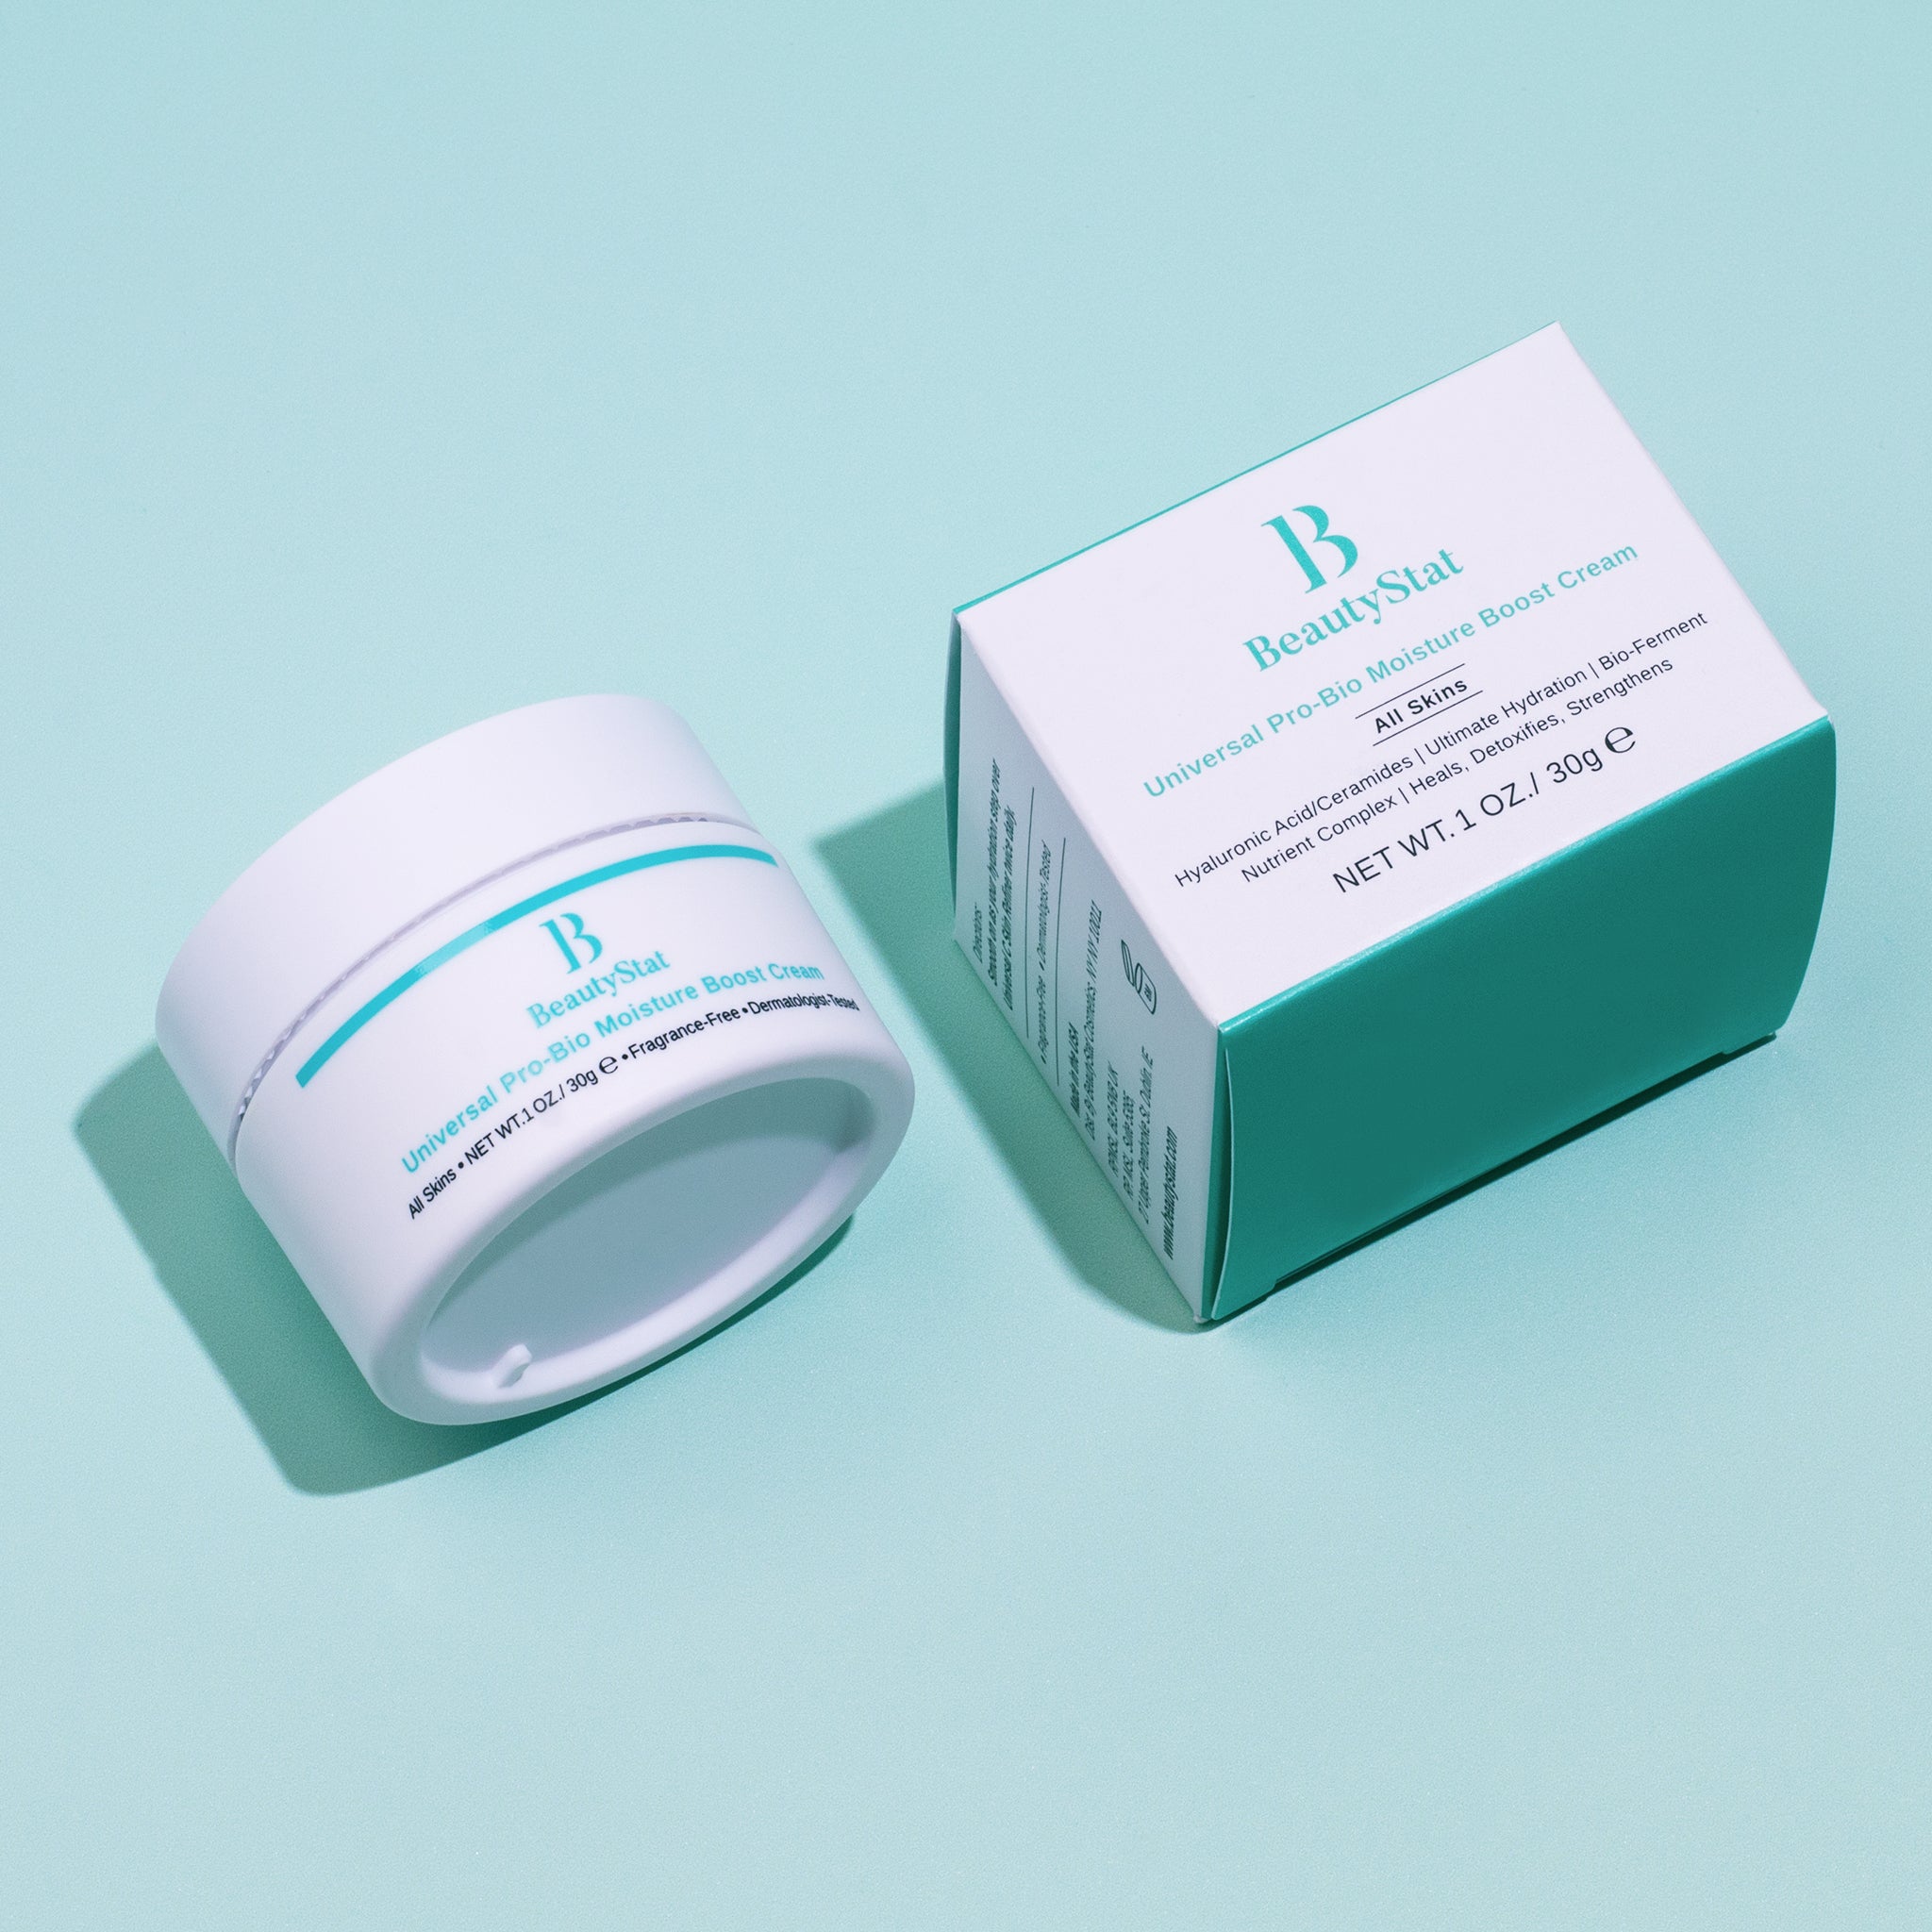 beautystat universal pro-bio moisture boost cream